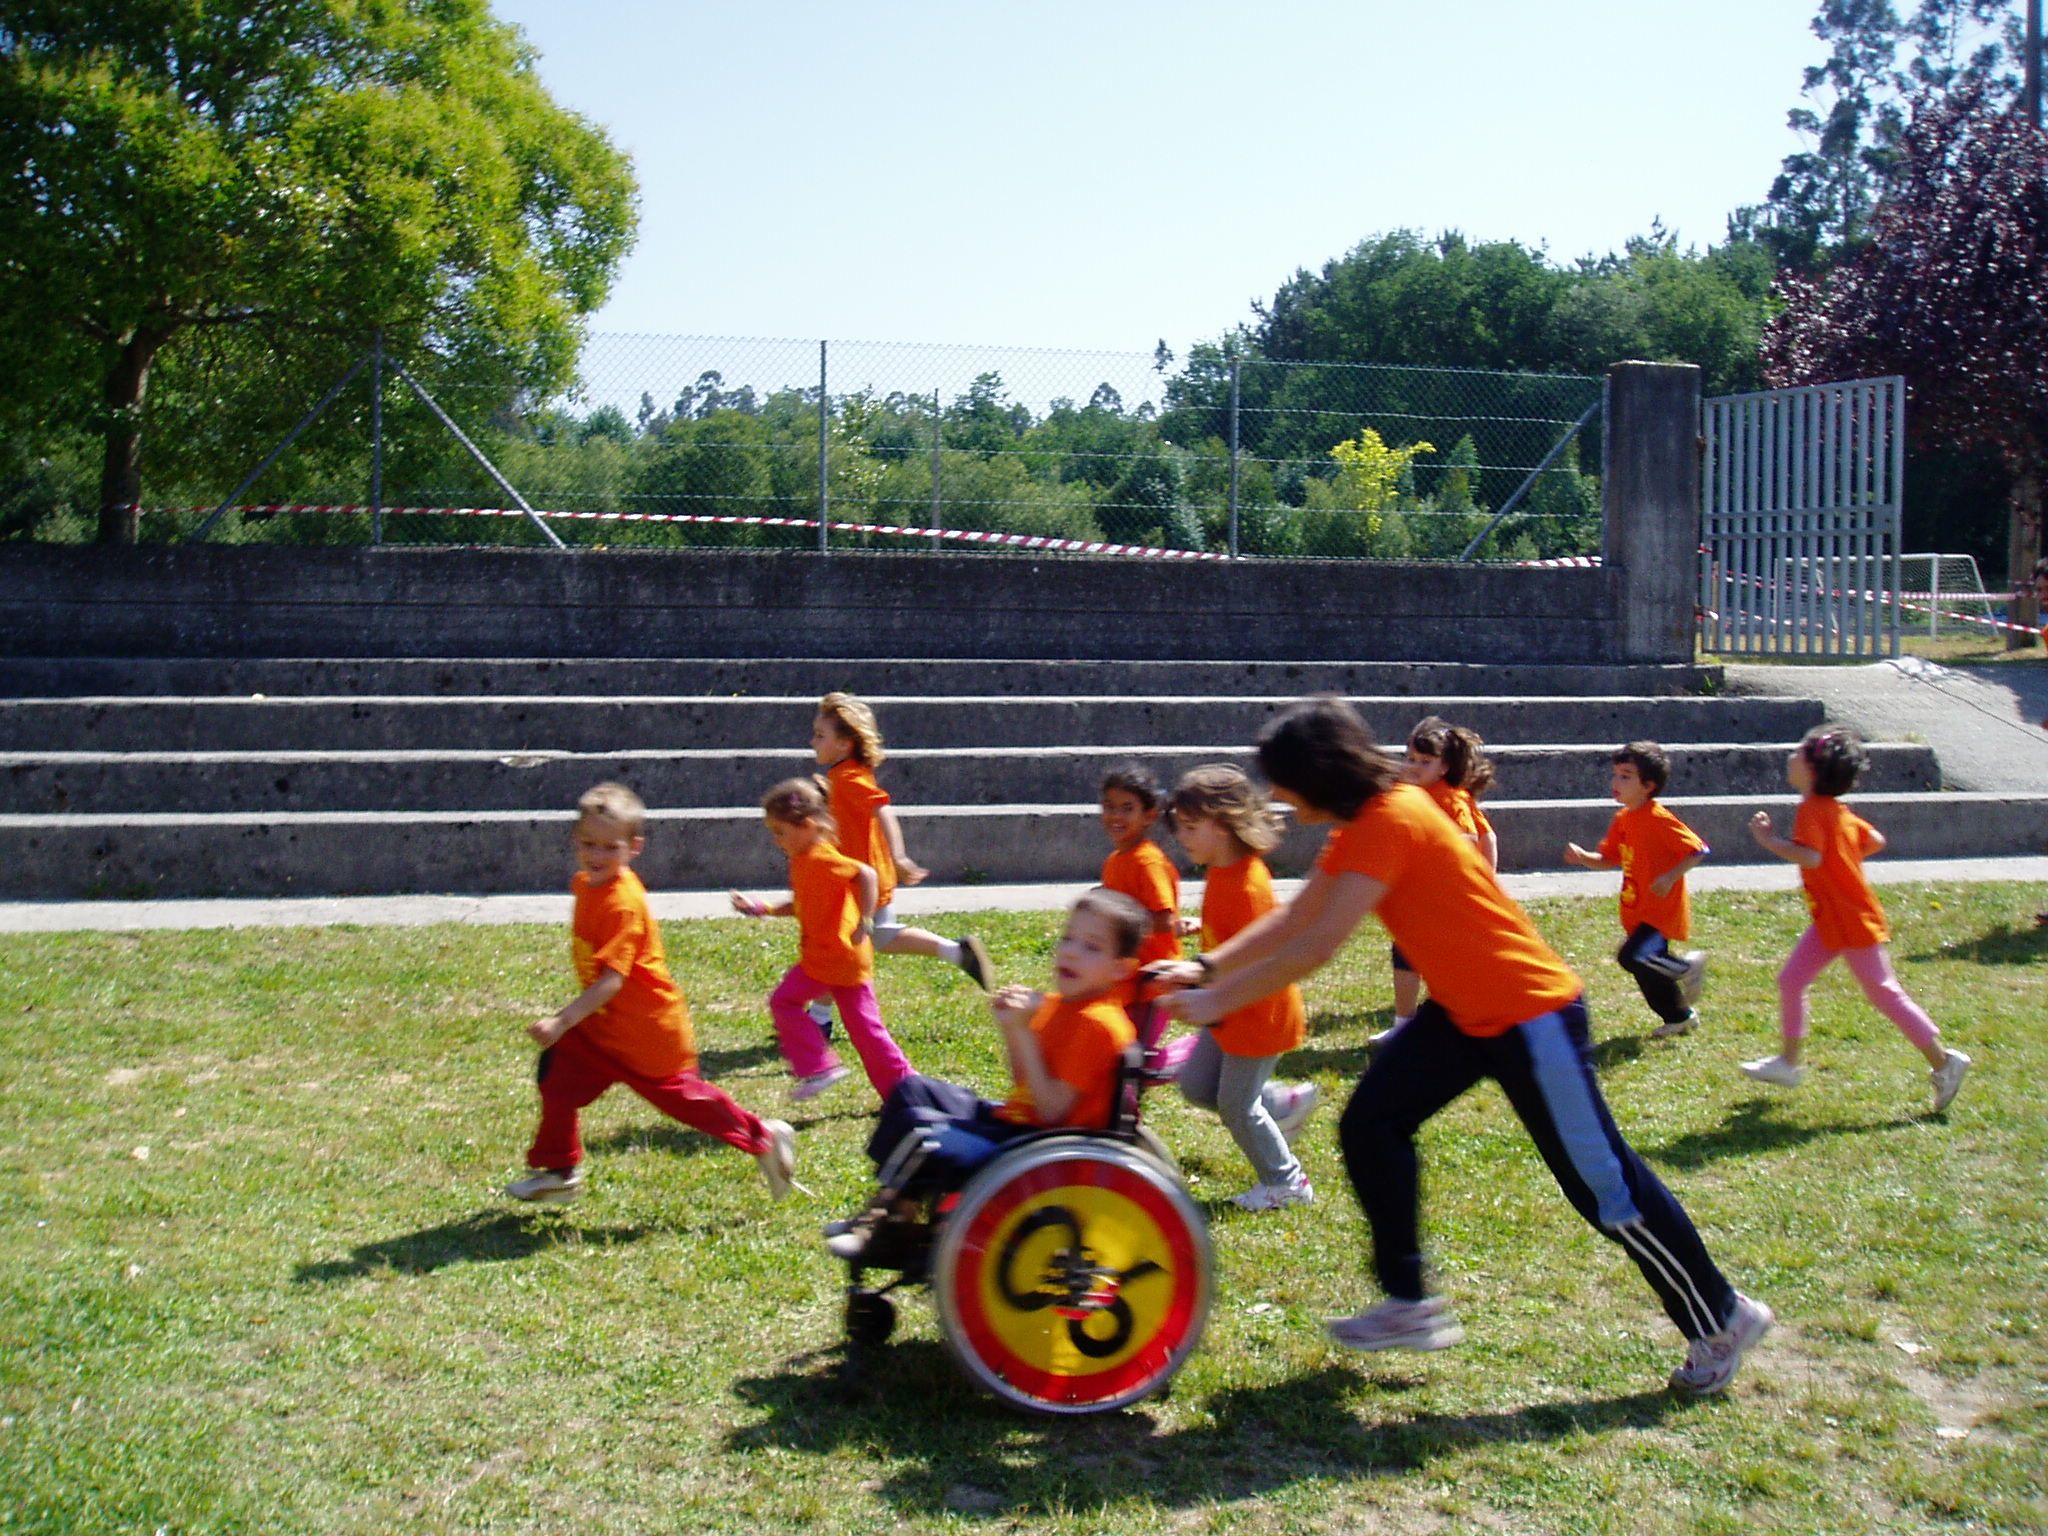 Un grupo de niños de infantil participando en una carrera. Todos llevan las mismas camisetas de color naranja chillón. Uno de ellos participa en su silla de ruedas y es la profesora quien la empuja. Todos se sitúan en torno a la silla. Porque el objetivo no es llegar el primero, sino llegar todos juntos.